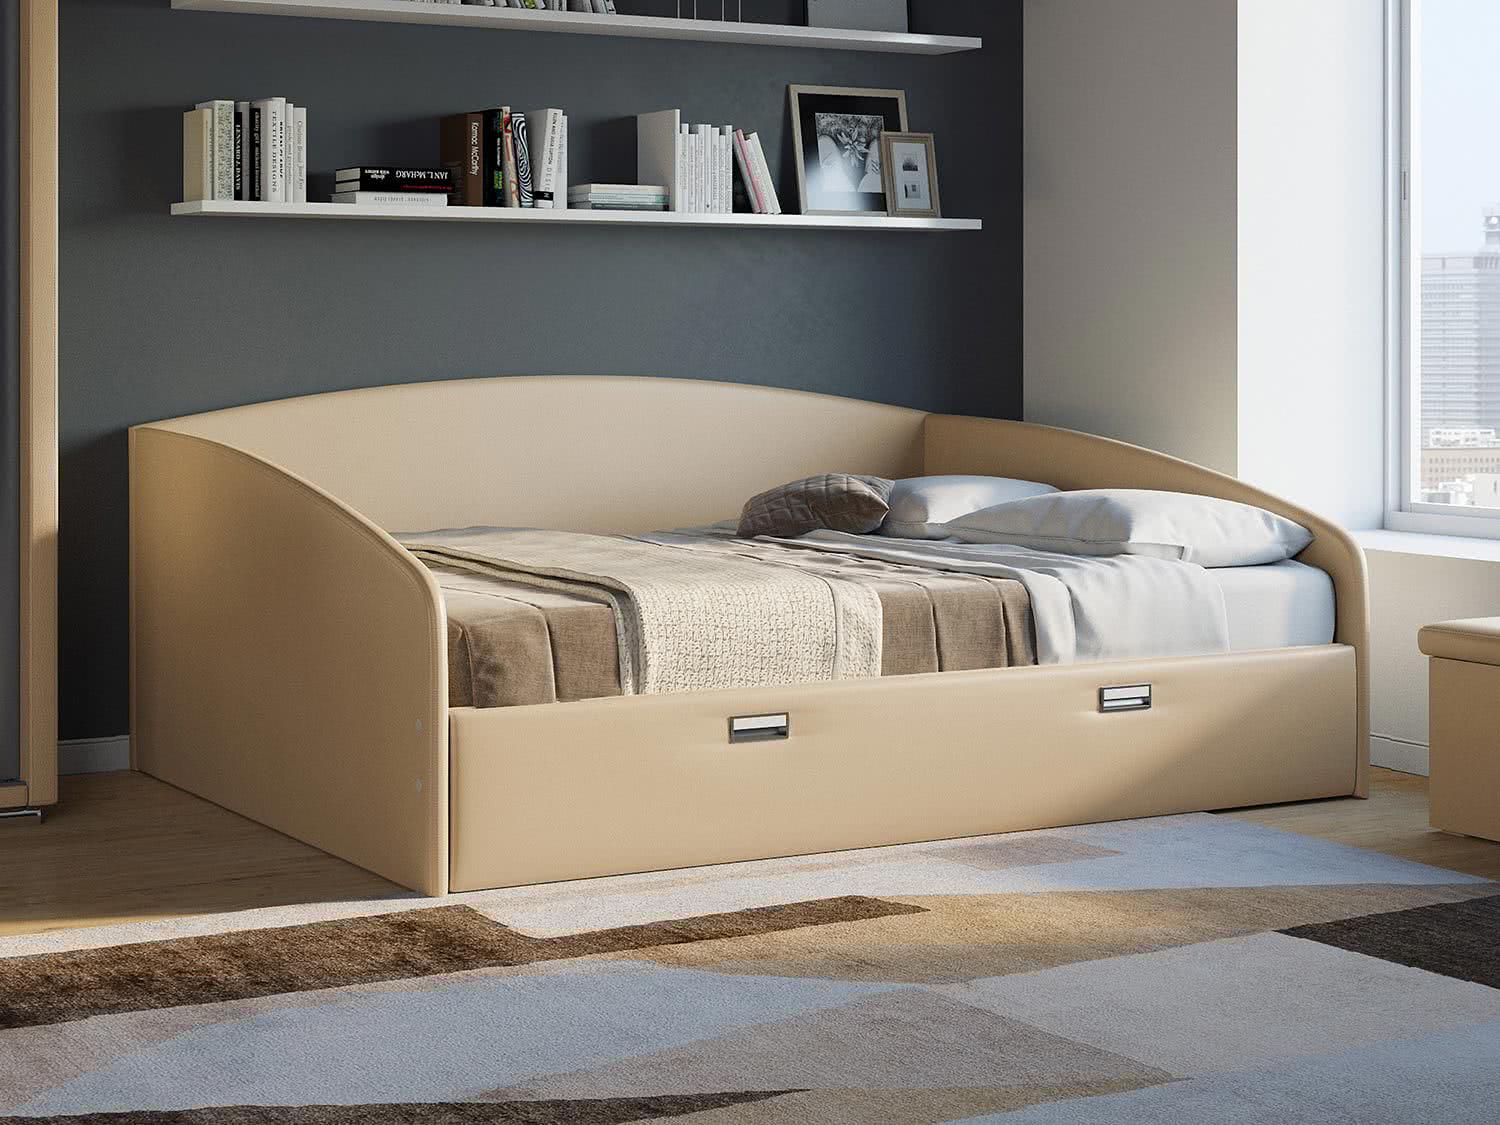 Купить Кровать Орматек Bono (экокожа стандарт), бежевый бежевый недорого в интернет-магазине